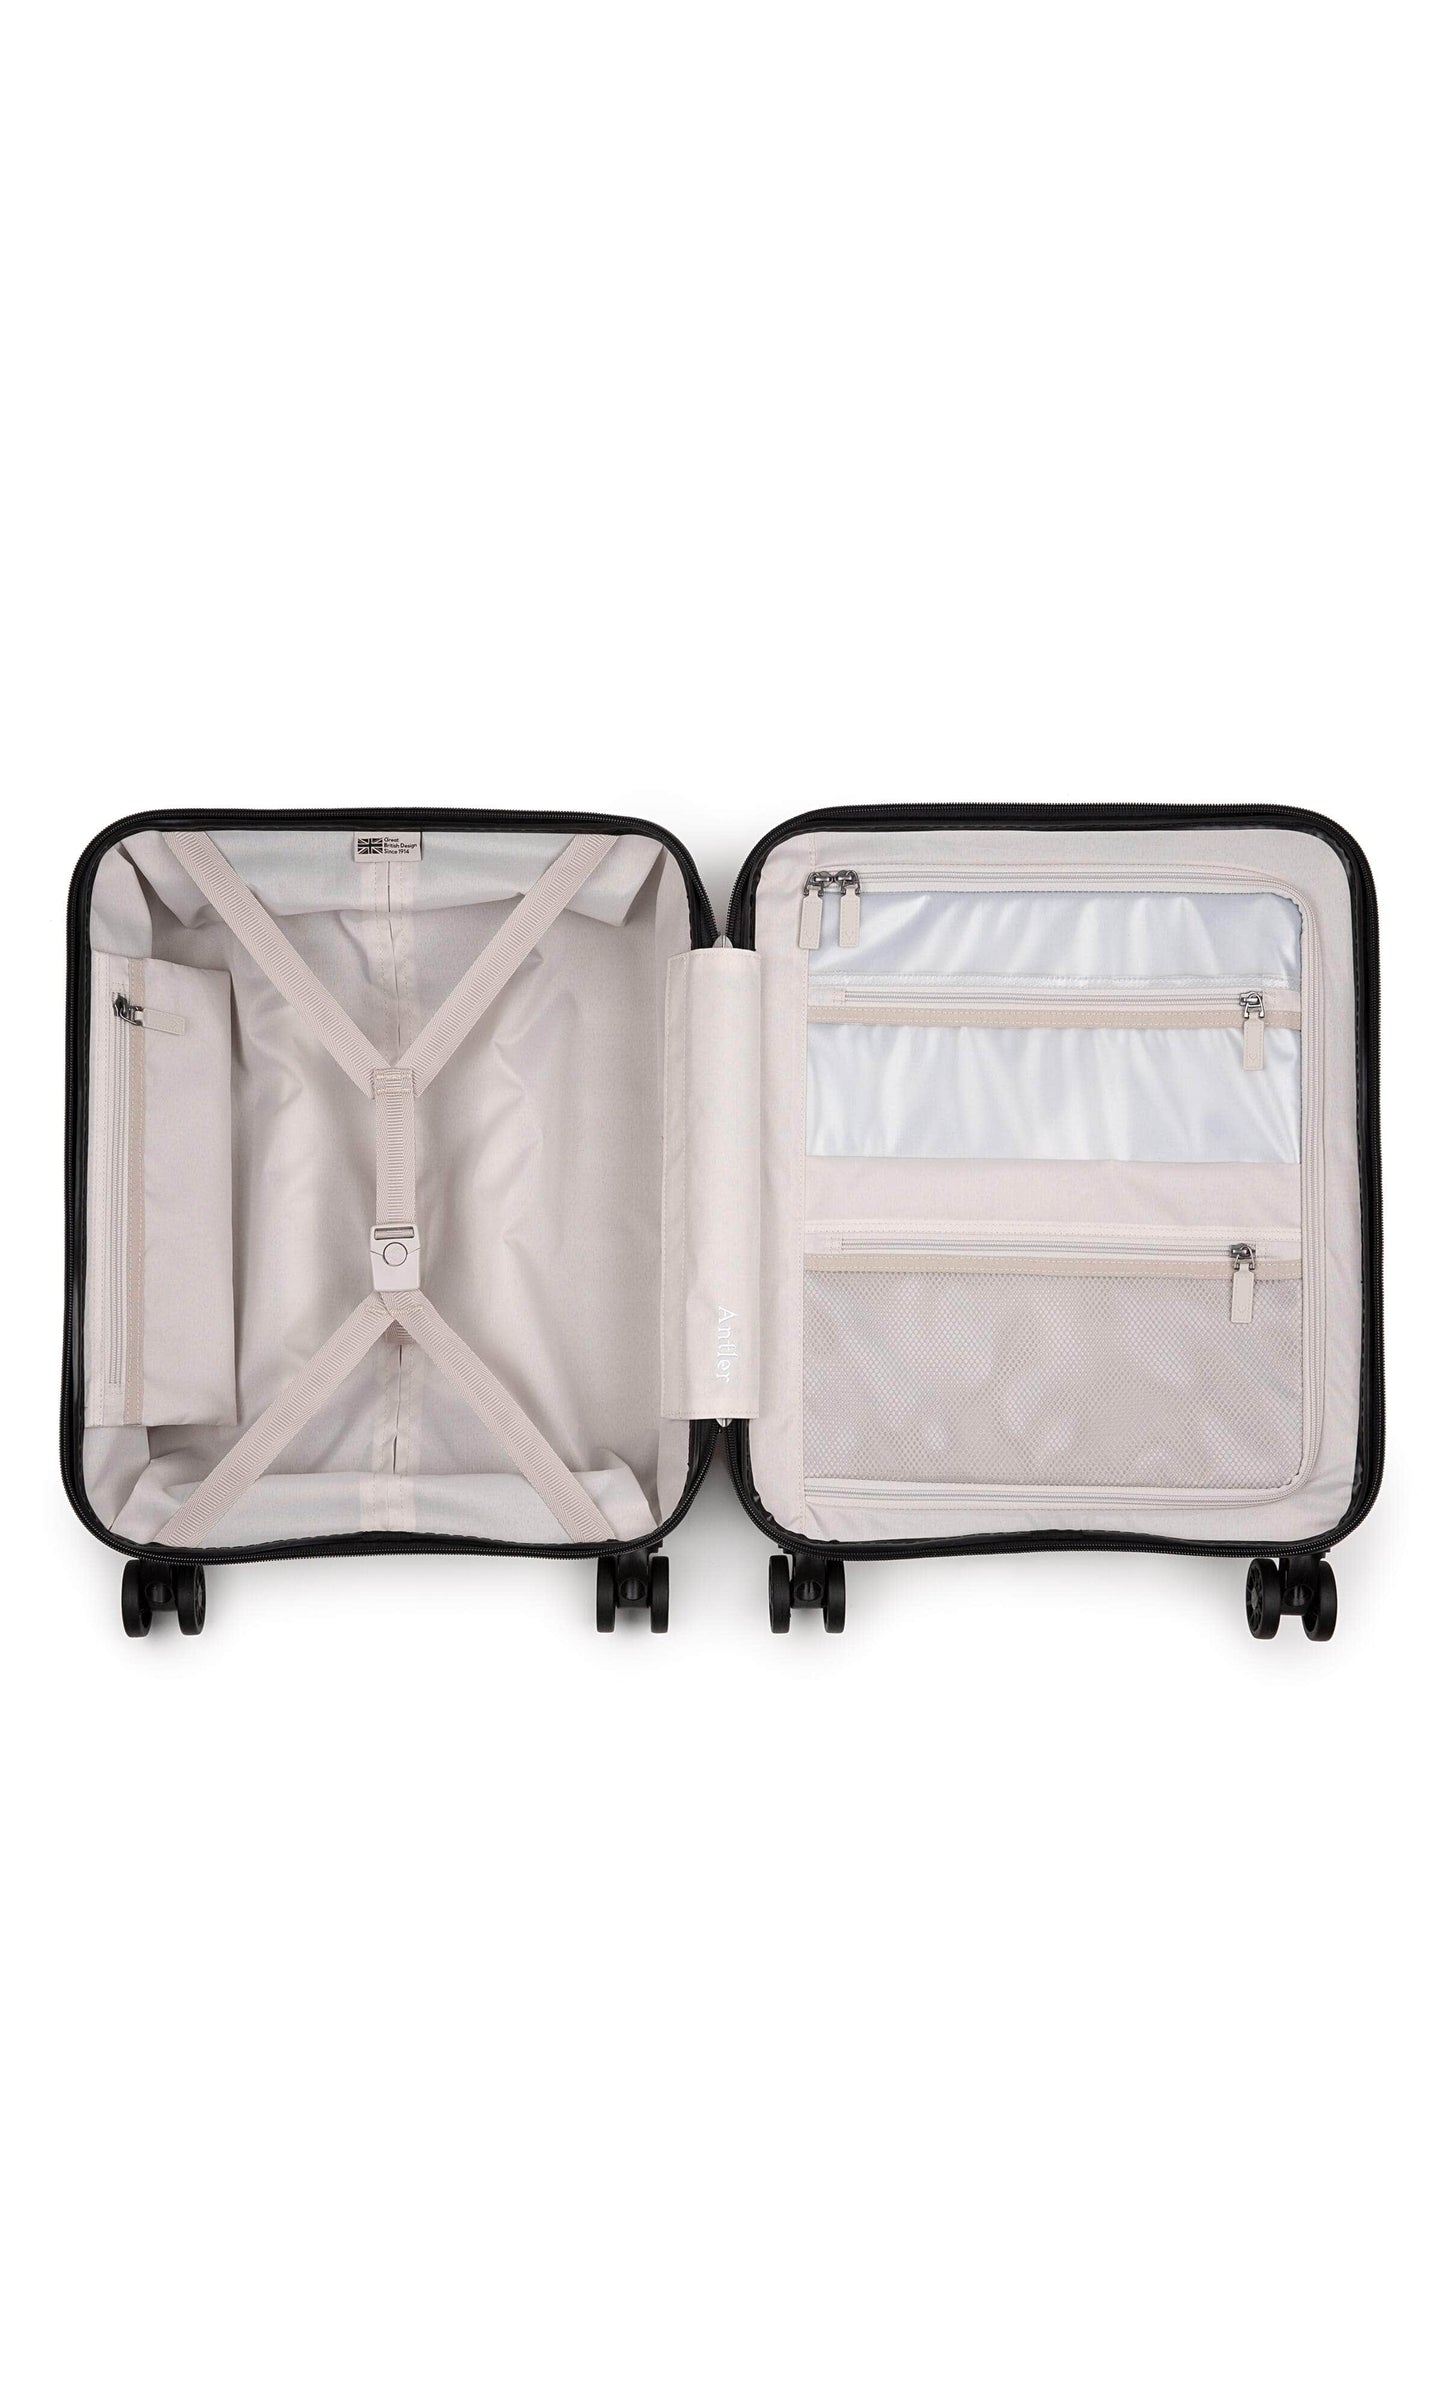 Antler Luggage -  Clifton cabin in taupe - Hard Suitcases Clifton 55x40x20cm Cabin Suitcase Taupe | Hard Suitcase | Antler UK